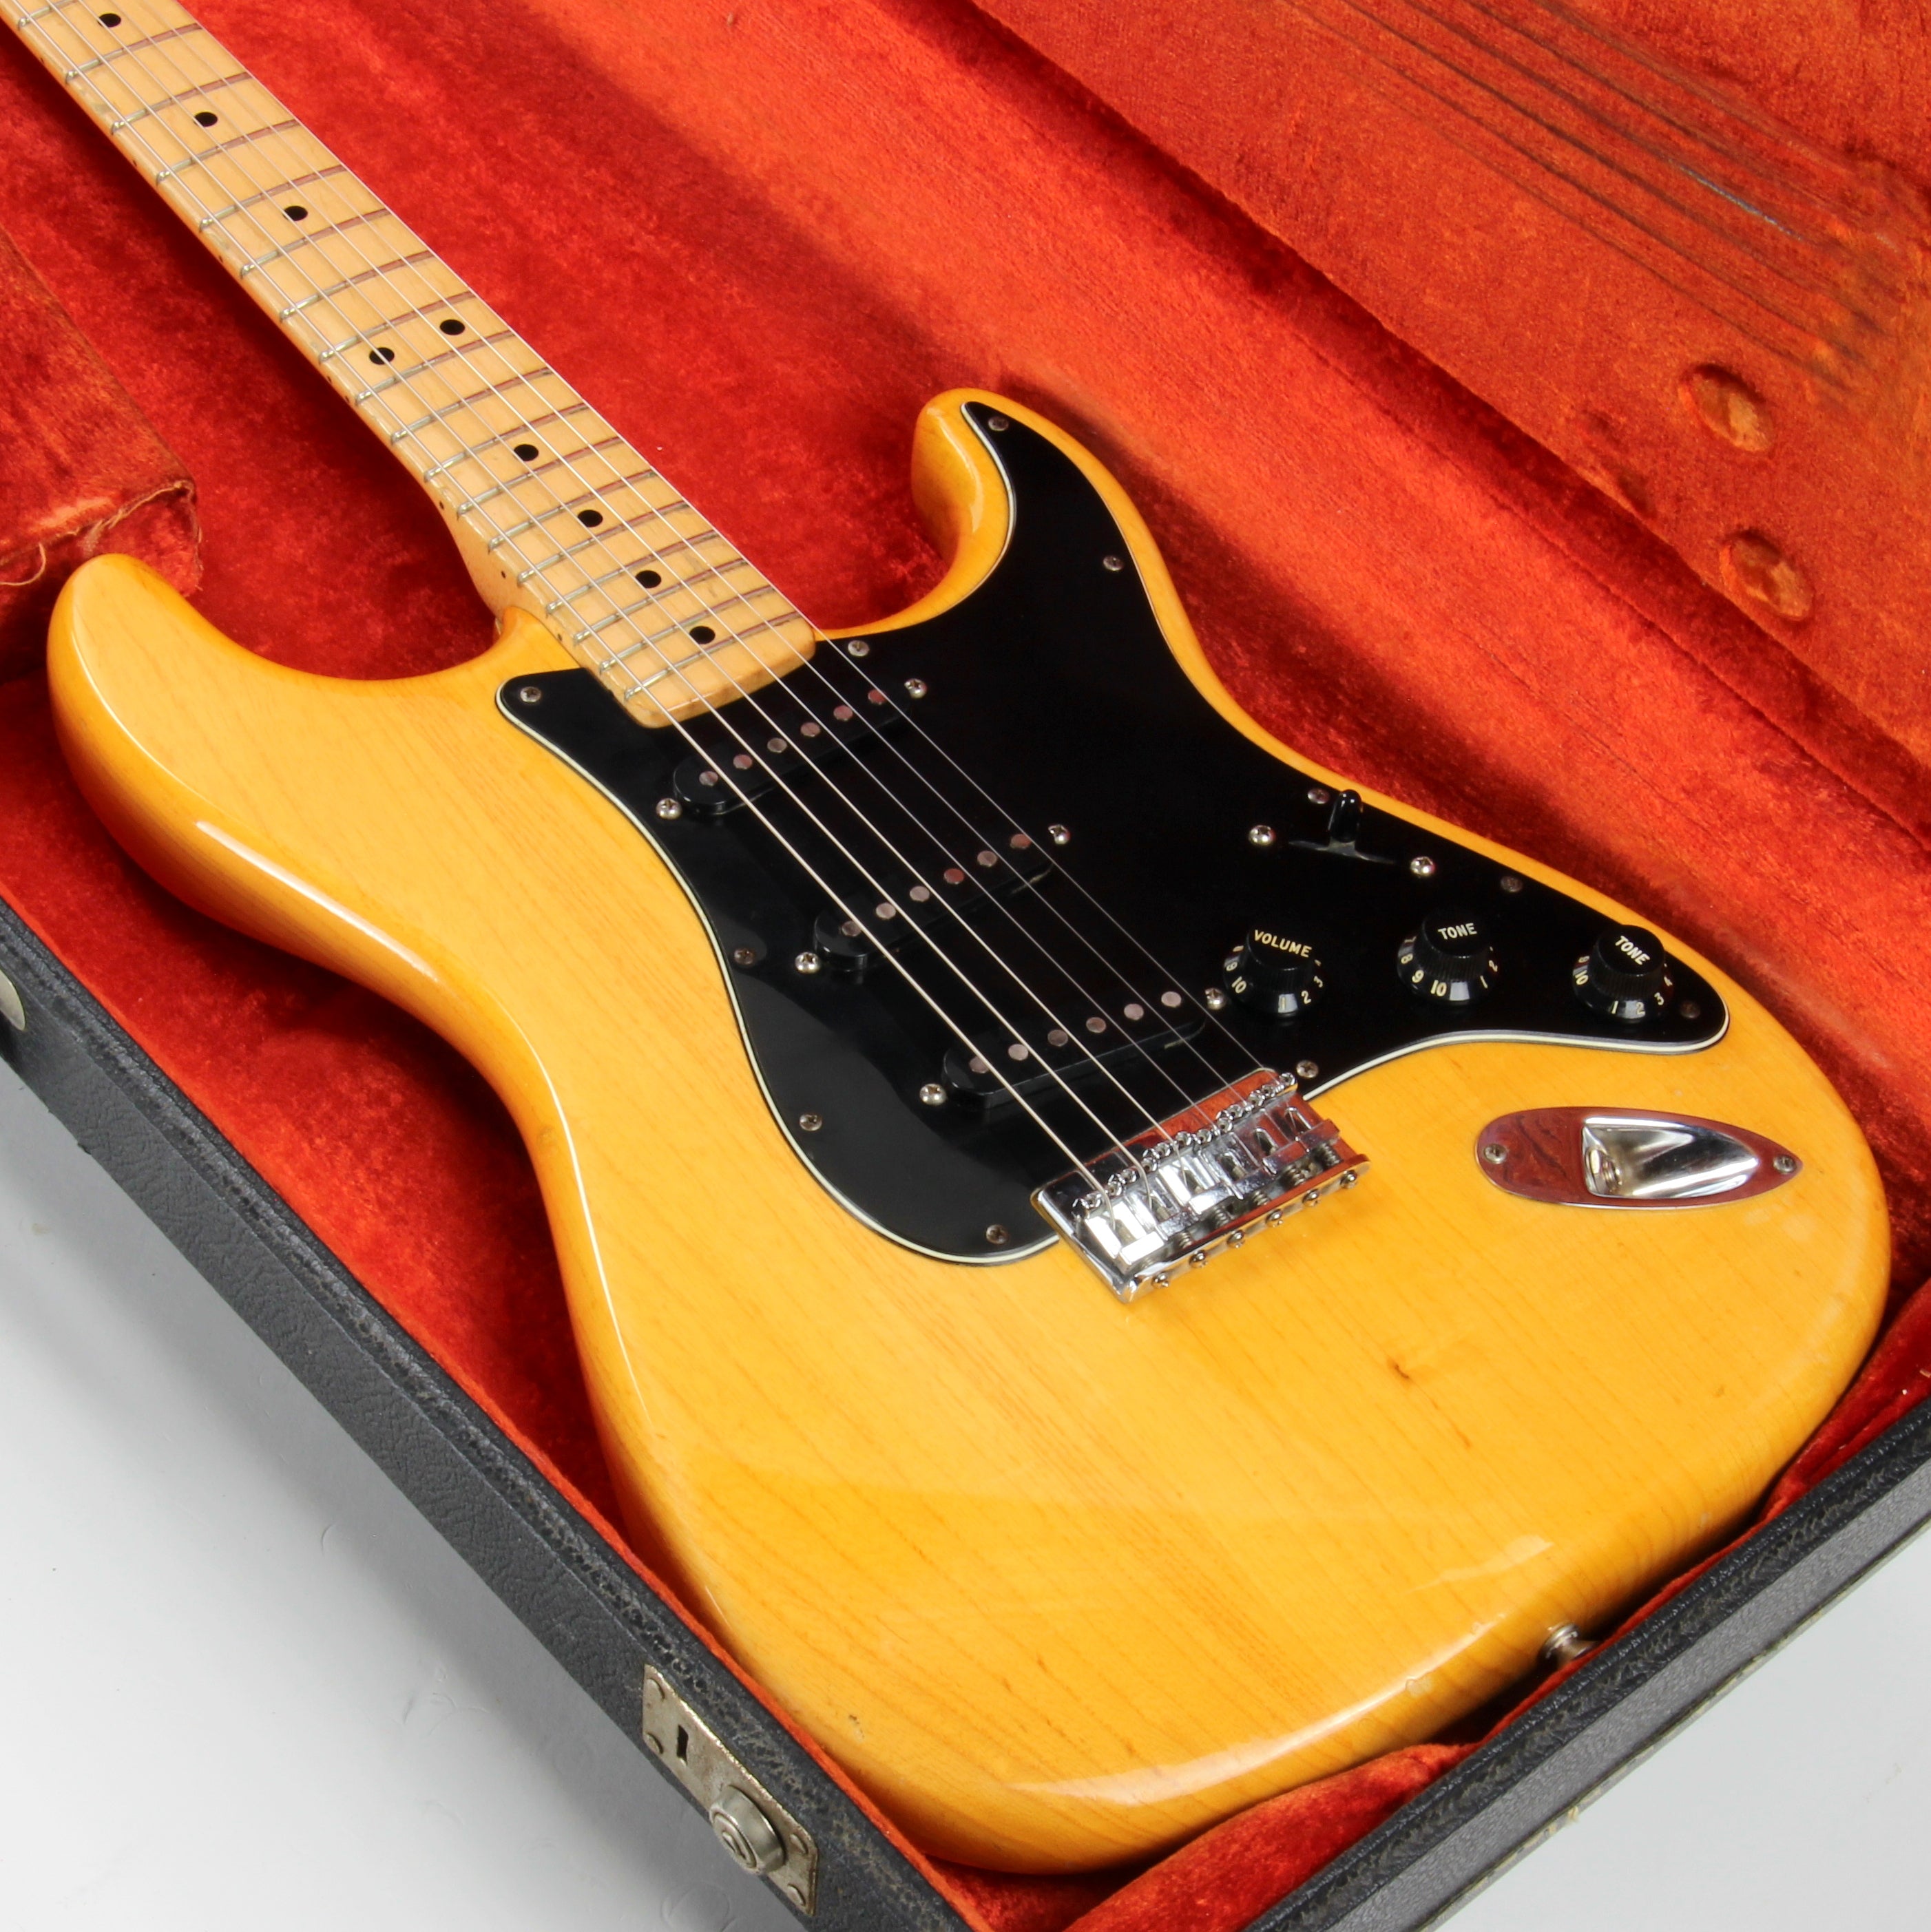 *SOLD*  LIGHT! 1977 Fender Stratocaster FLAMED ASH Natural - Maple Neck Strat Vintage USA 1970's Hardtail